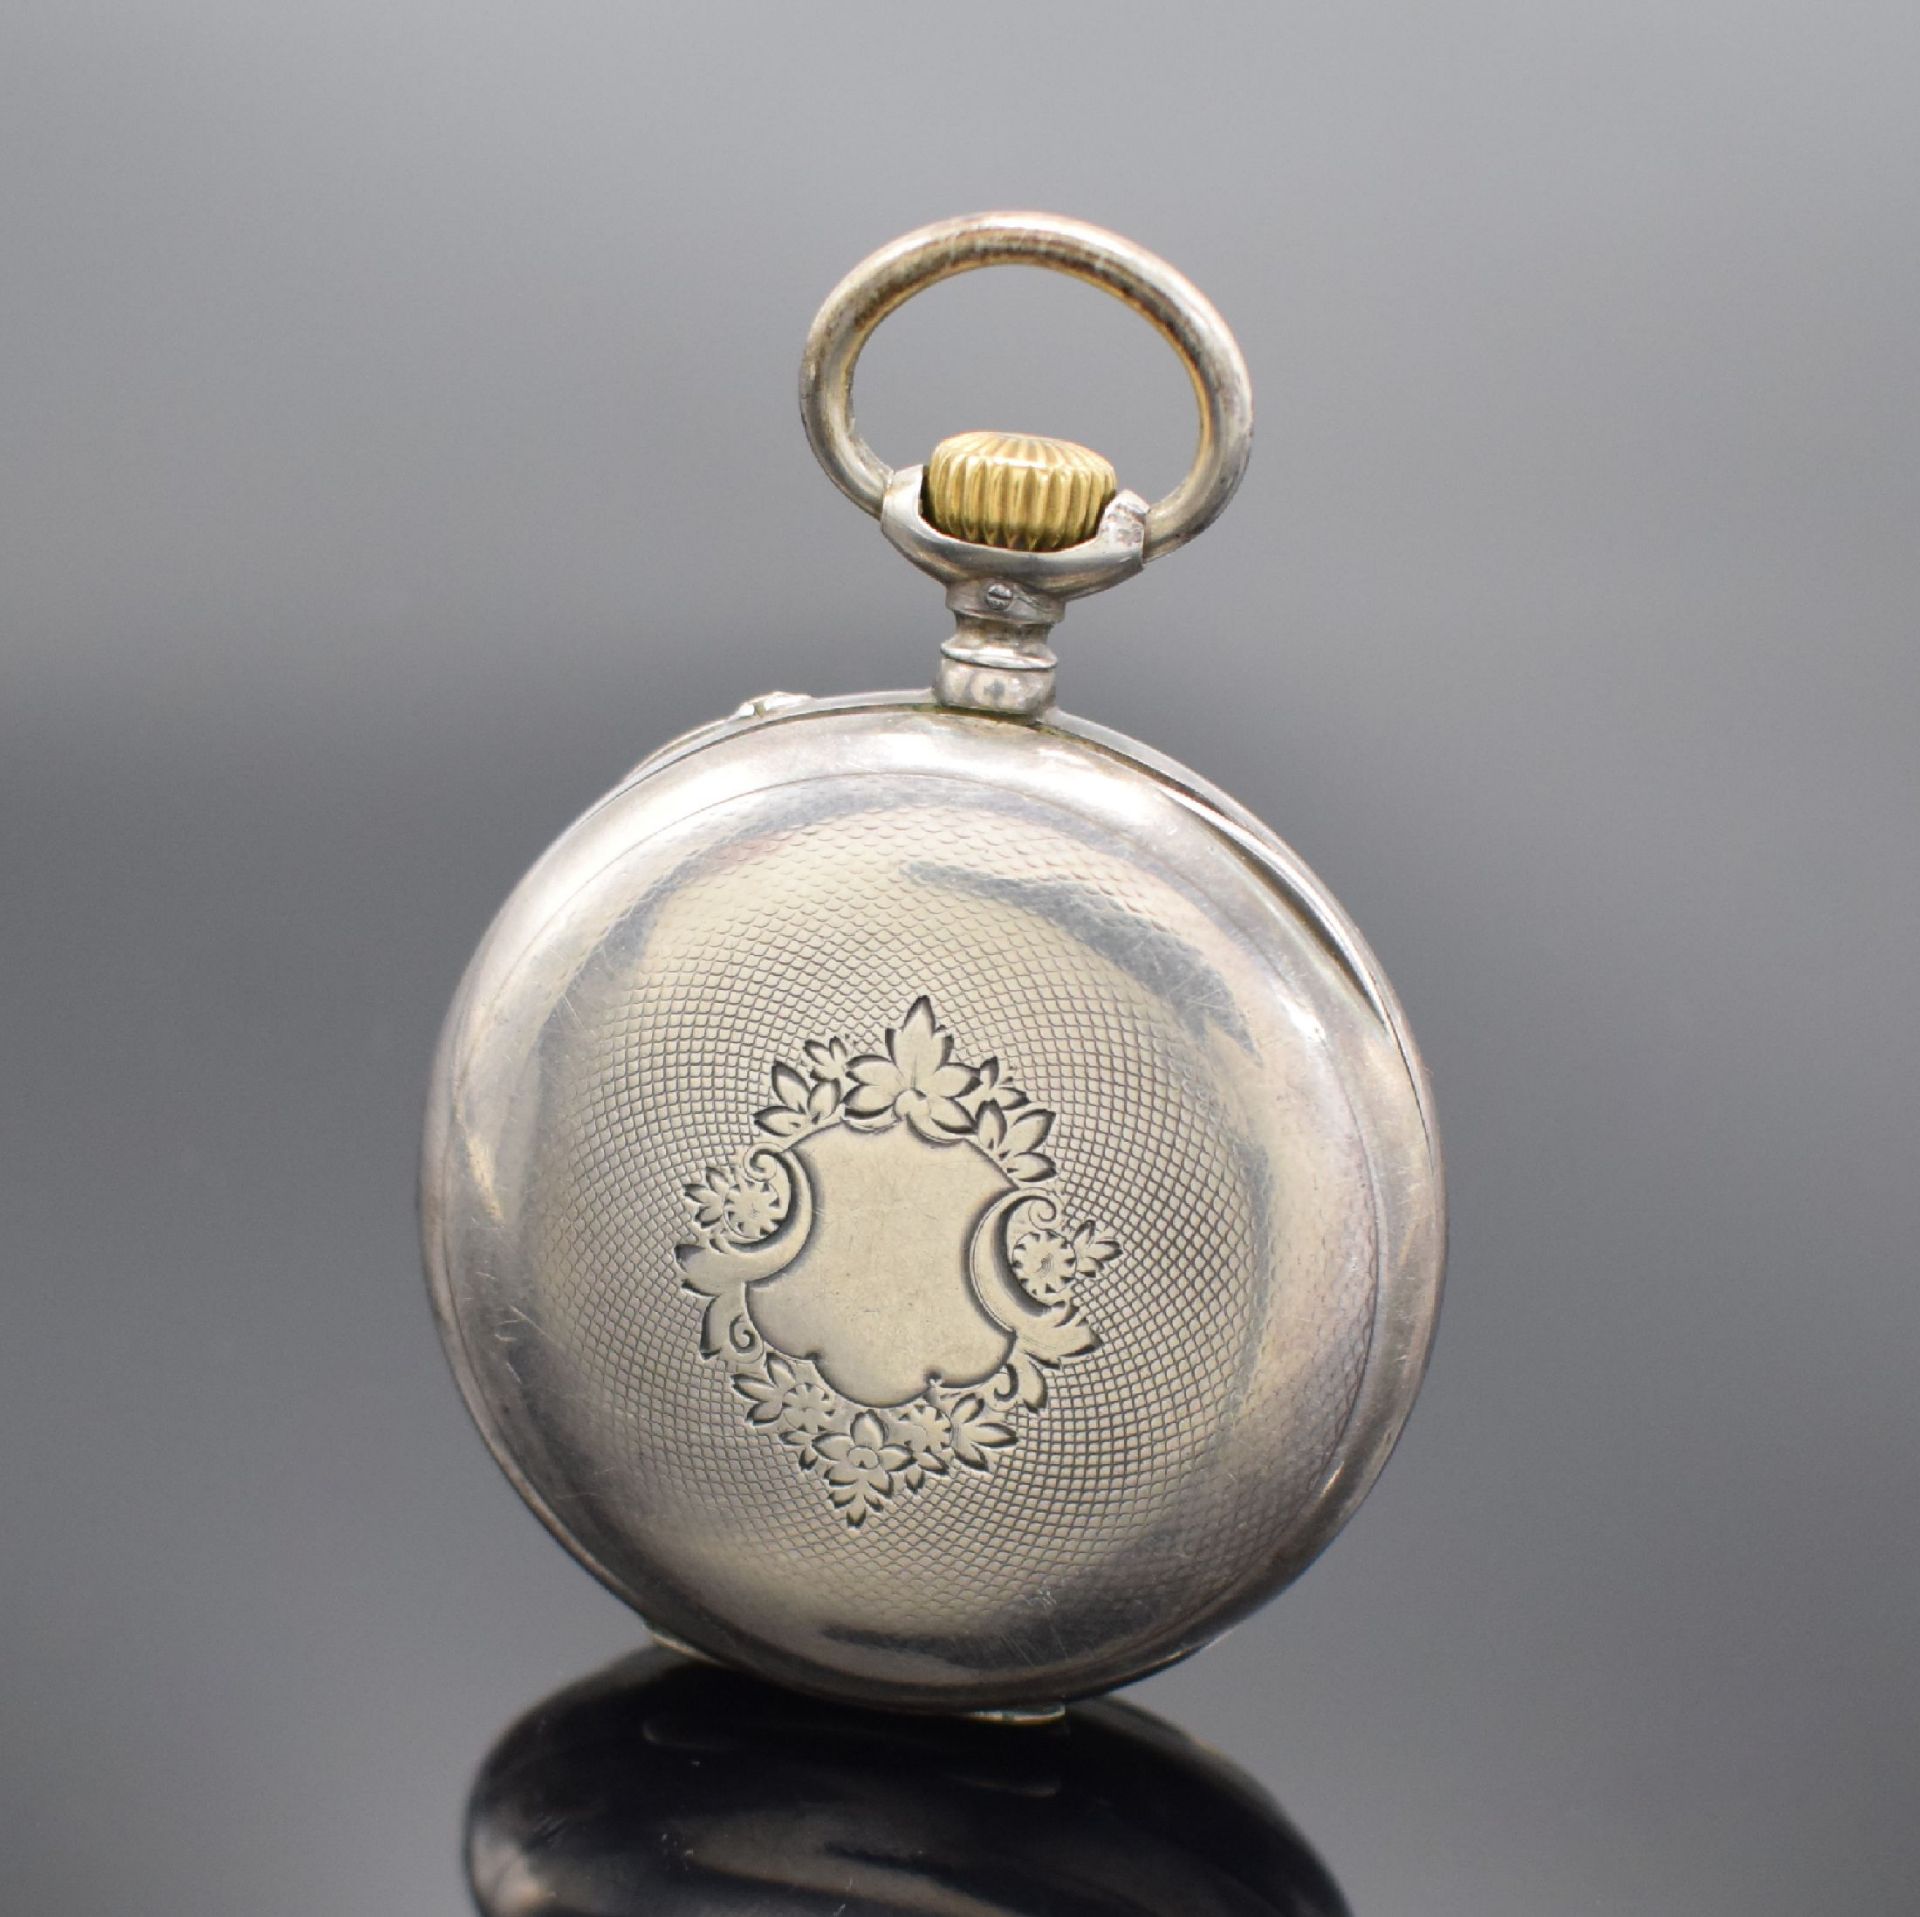 IWC offene Taschenuhr in 800er Silber,  Schweiz um 1900, - Bild 2 aus 6